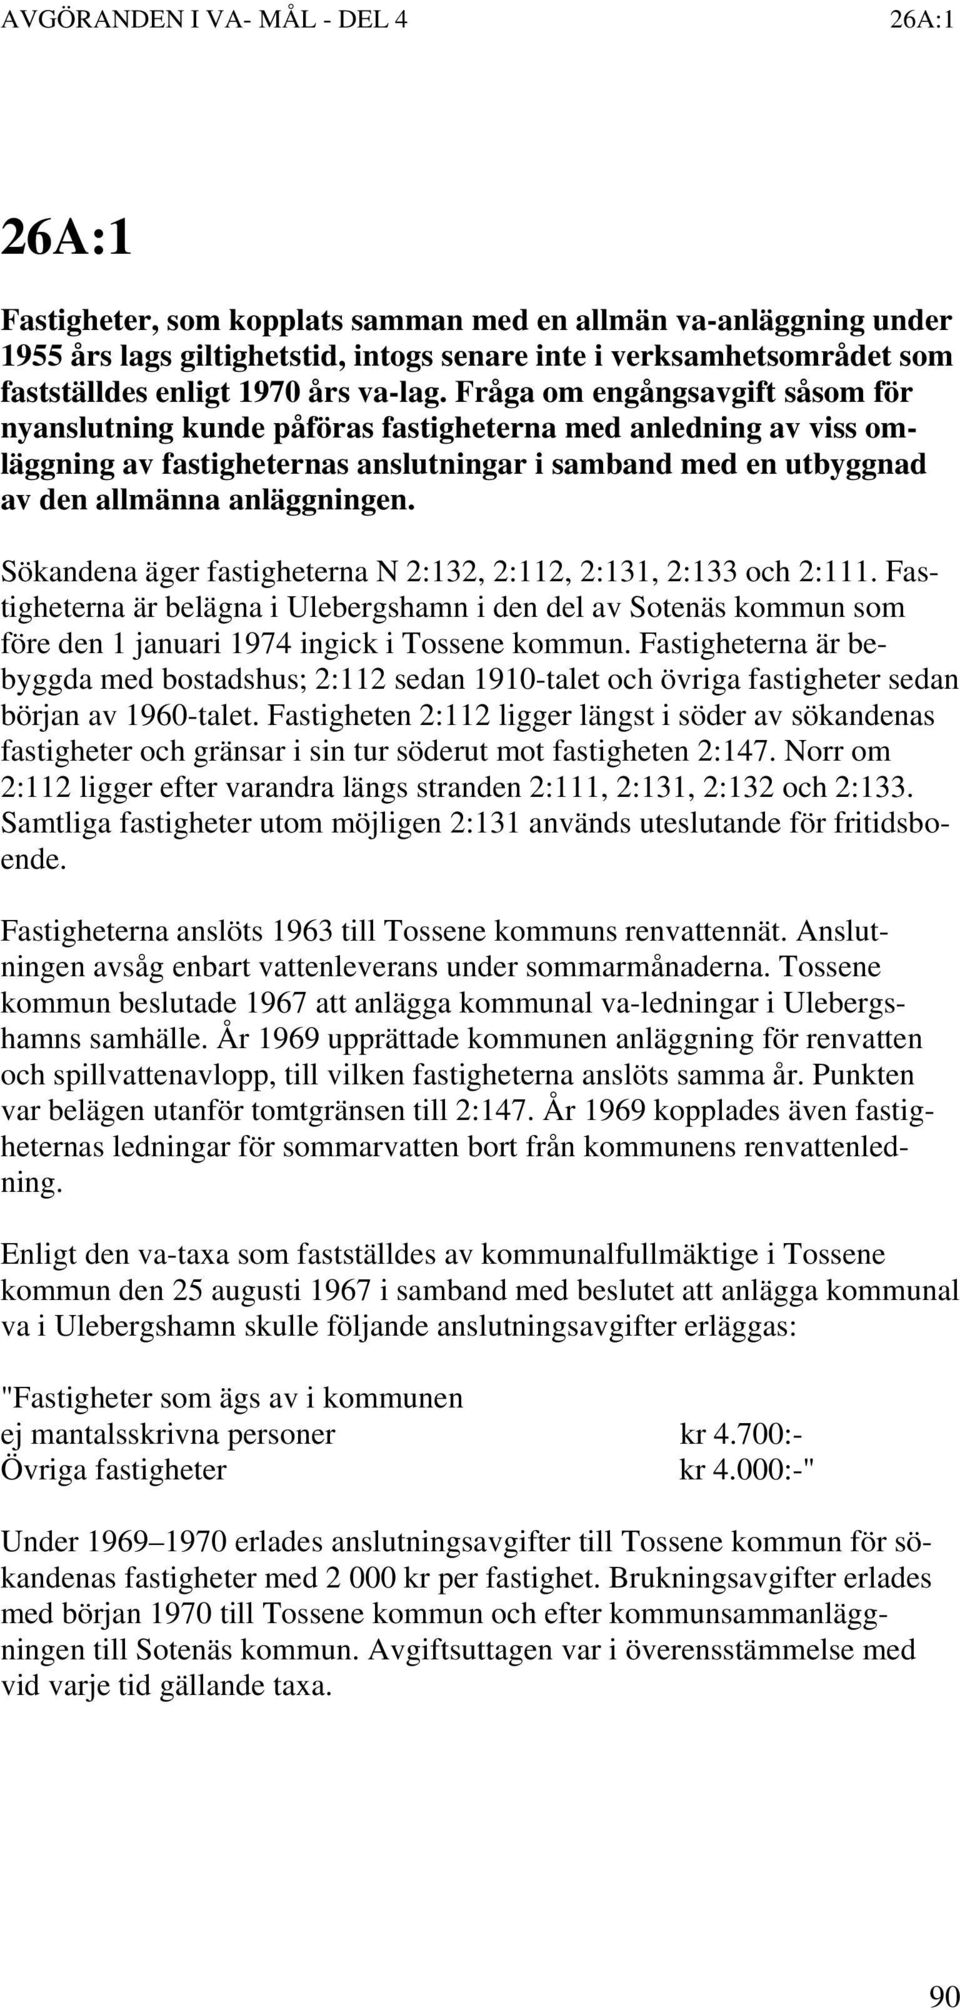 Sökandena äger fastigheterna N 2:132, 2:112, 2:131, 2:133 och 2:111. Fastigheterna är belägna i Ulebergshamn i den del av Sotenäs kommun som före den 1 januari 1974 ingick i Tossene kommun.